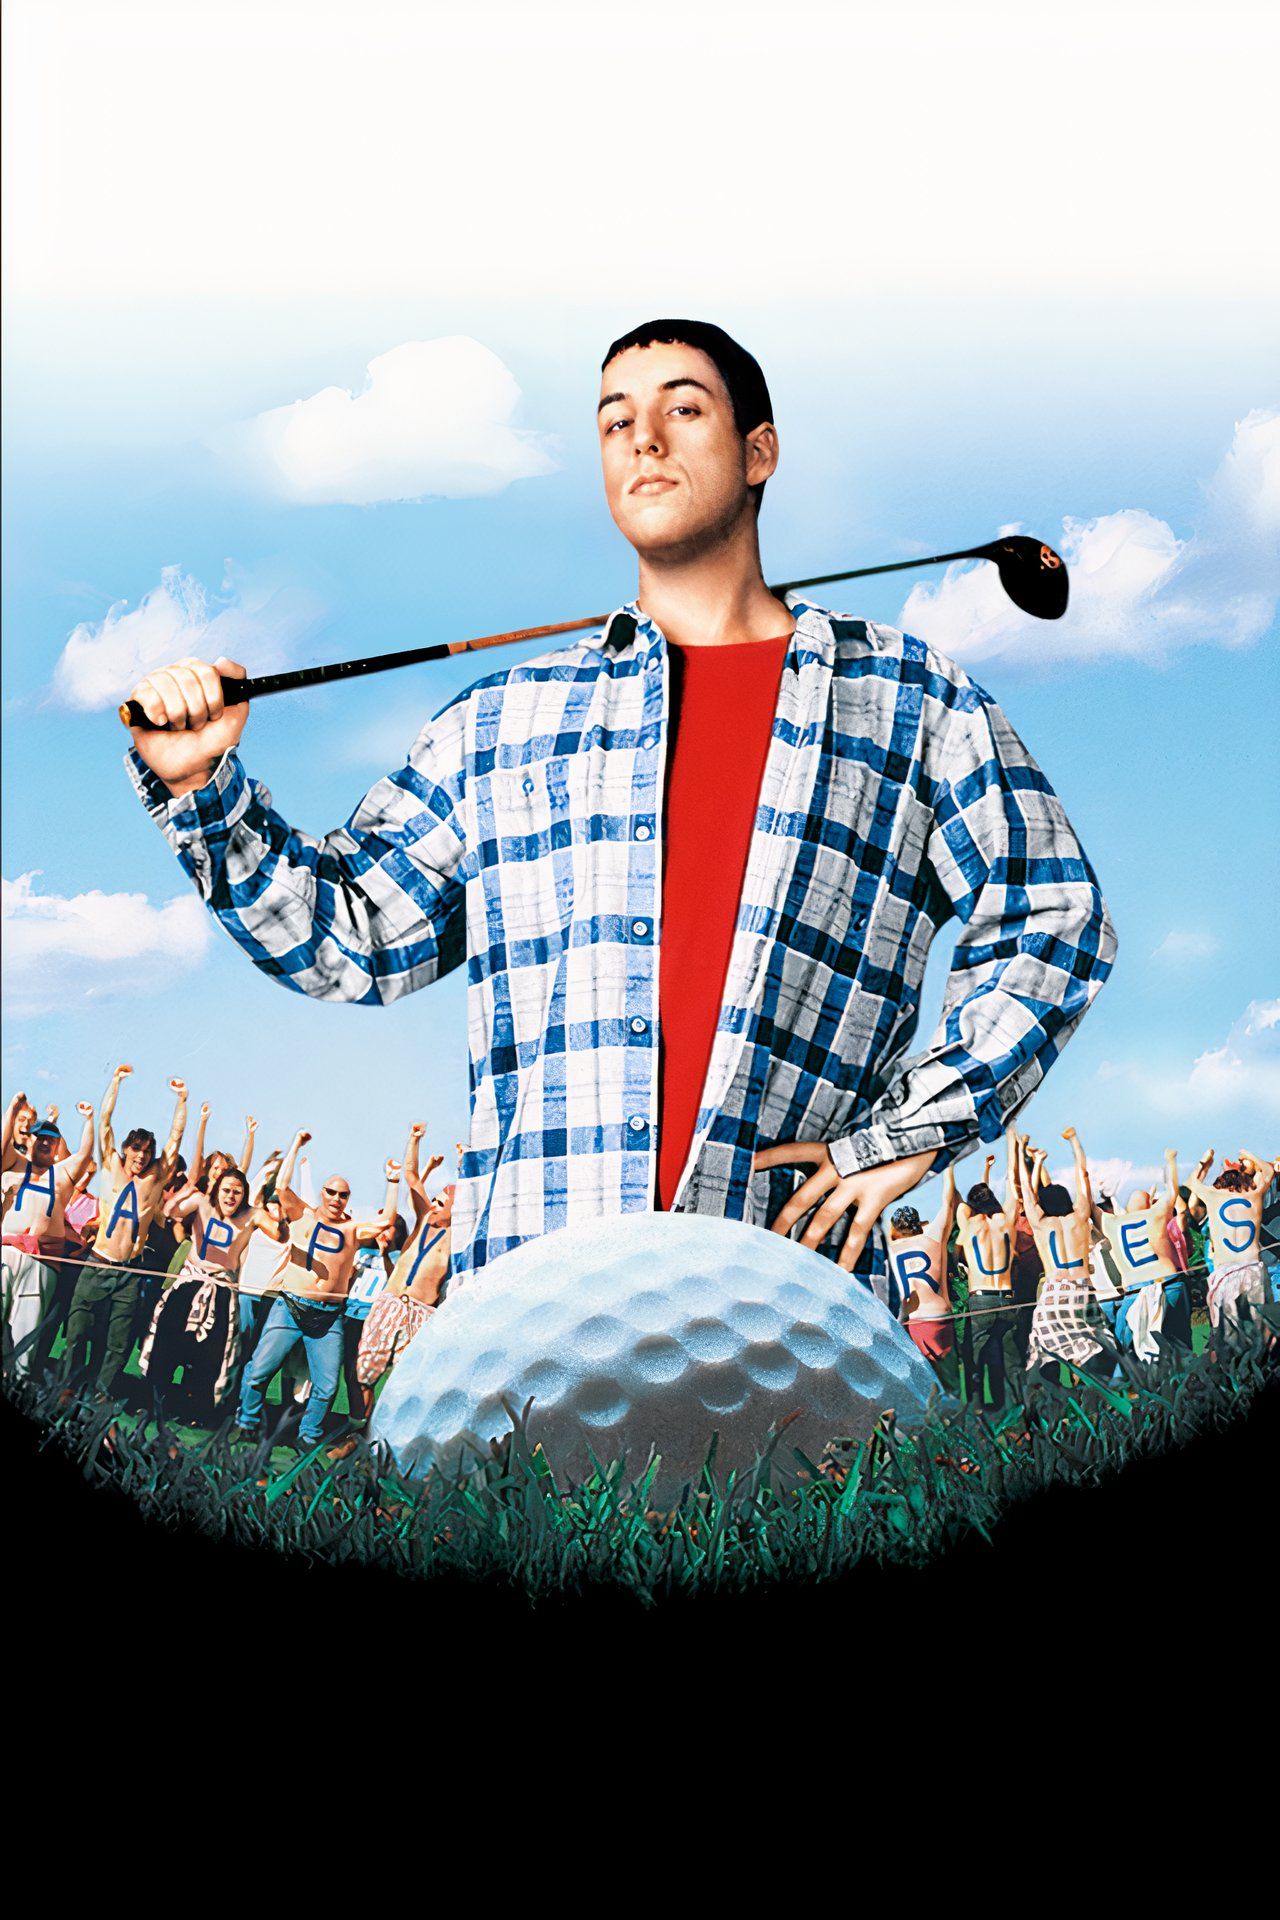 Pôster sem texto de Happy Gilmore mostrando Adam Sandler segurando um taco de golfe olhando para uma bola